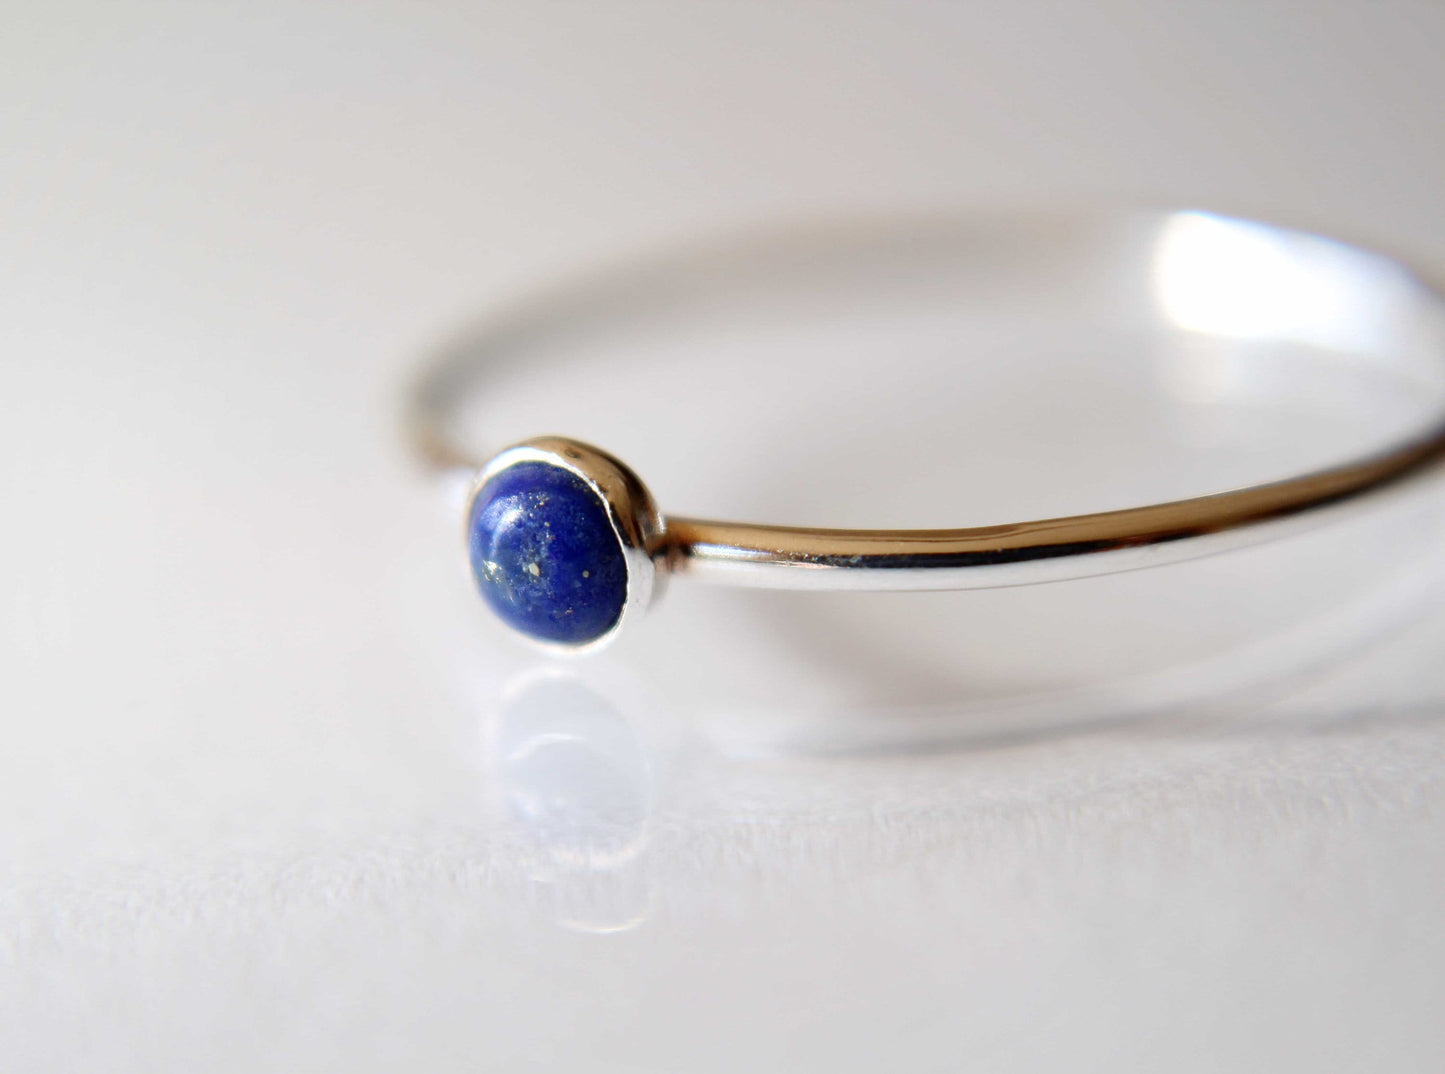 Lapis Ring, Lapis Stacking Ring, Tiny Lapis Ring, Gemstone Ring, Lapis Lazuli Ring, Gemstone Stacking Ring, Blue, Lapis Lazuli Stone, Gift